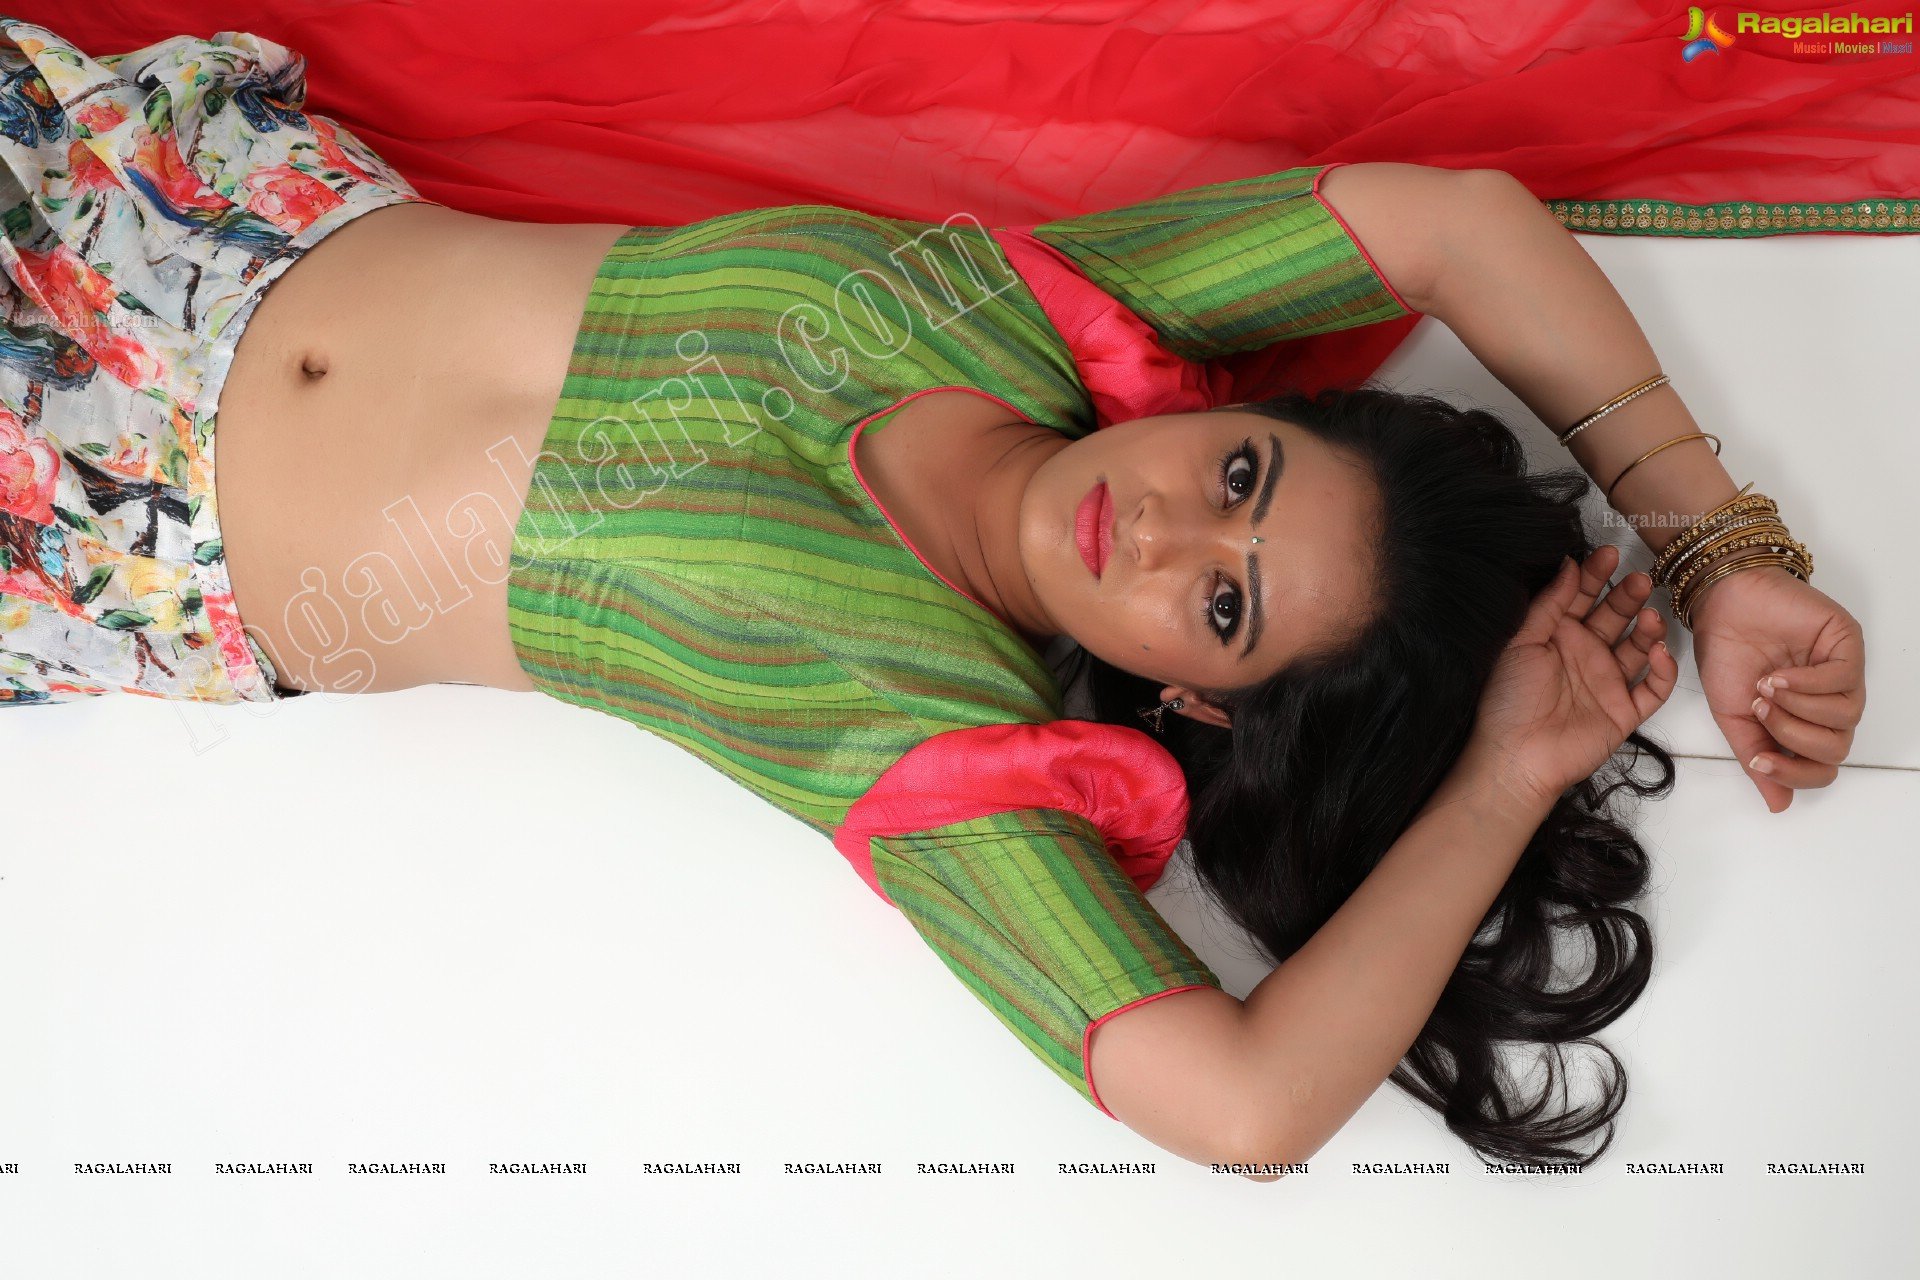 Anusha Parada (Exclusive Studio Shoot) (High Definition Photos)